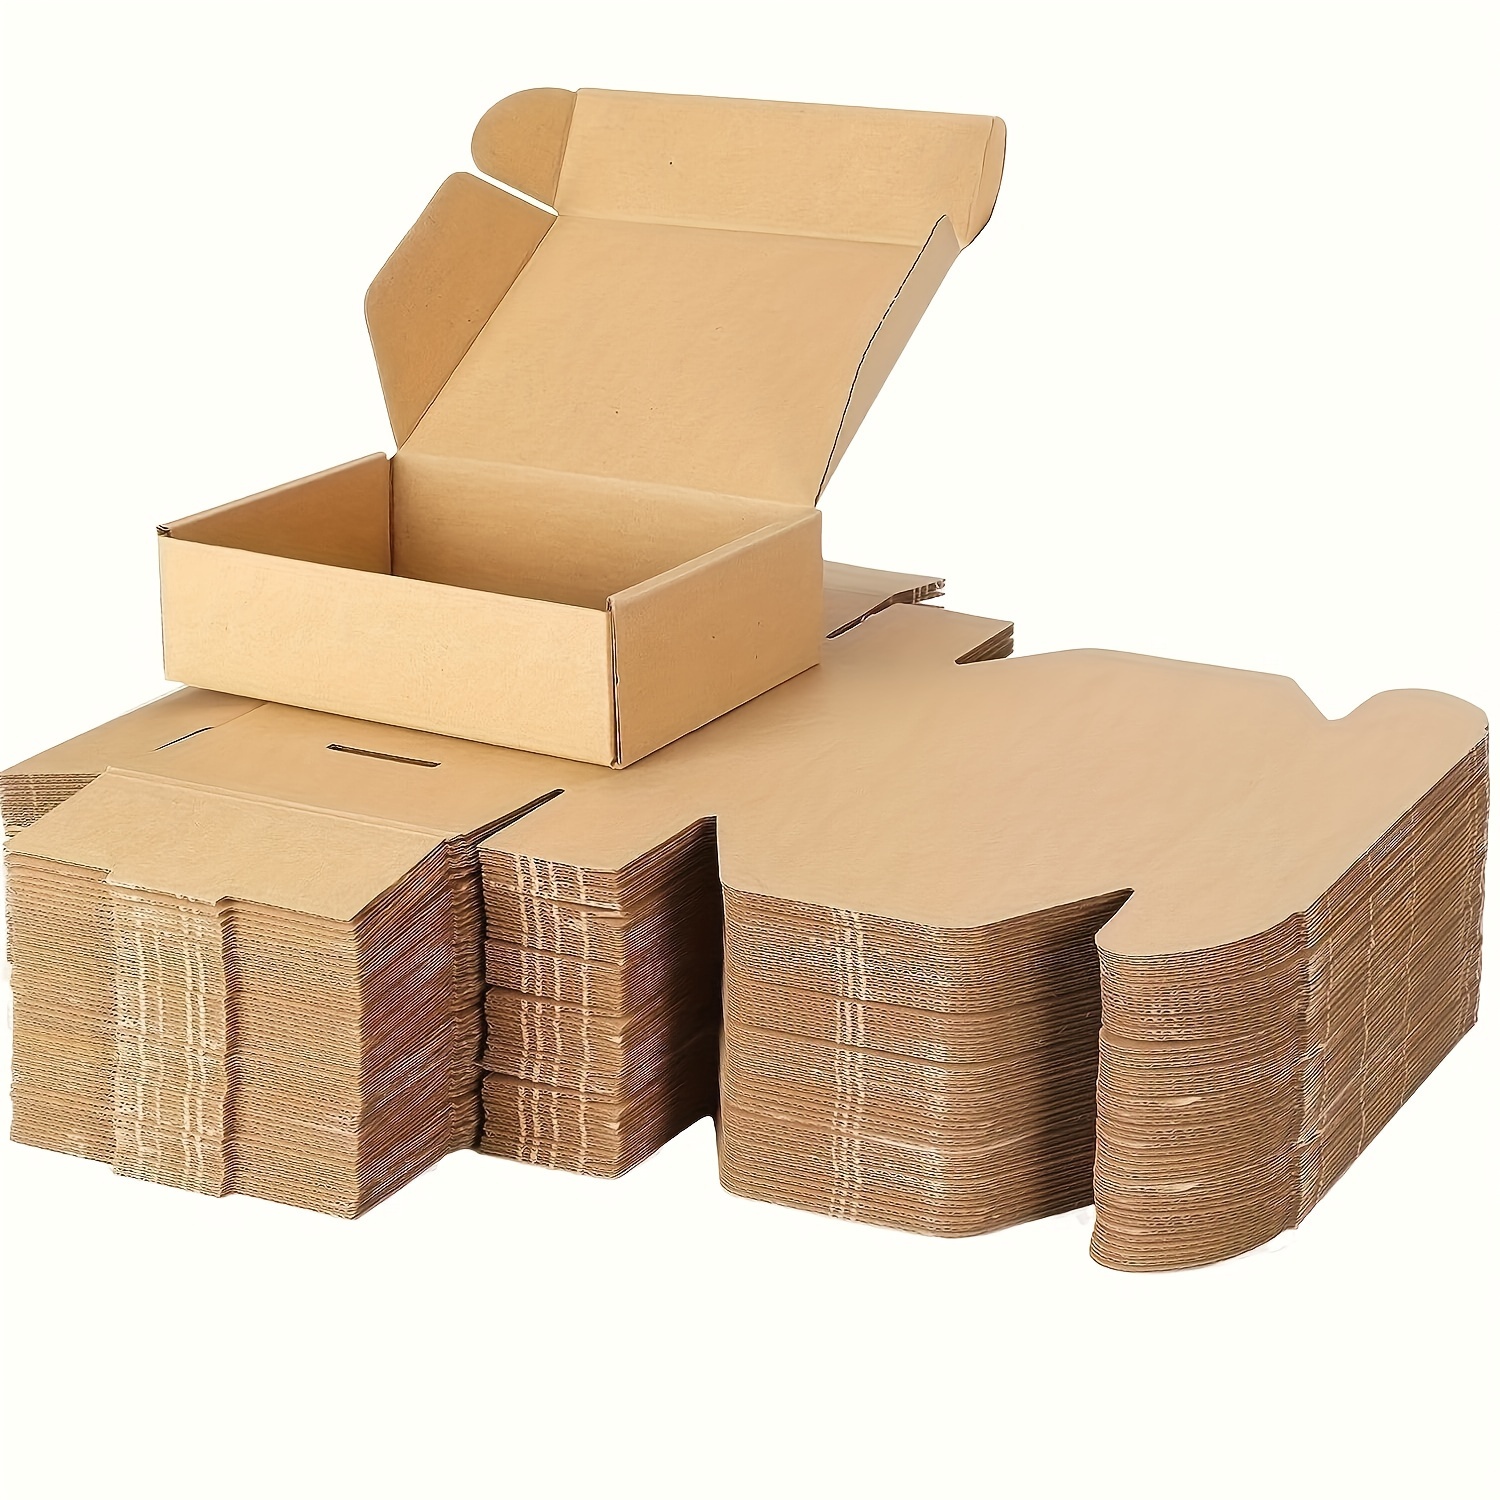 Cajas plegables de cartón ondulado, hasta 399 mm